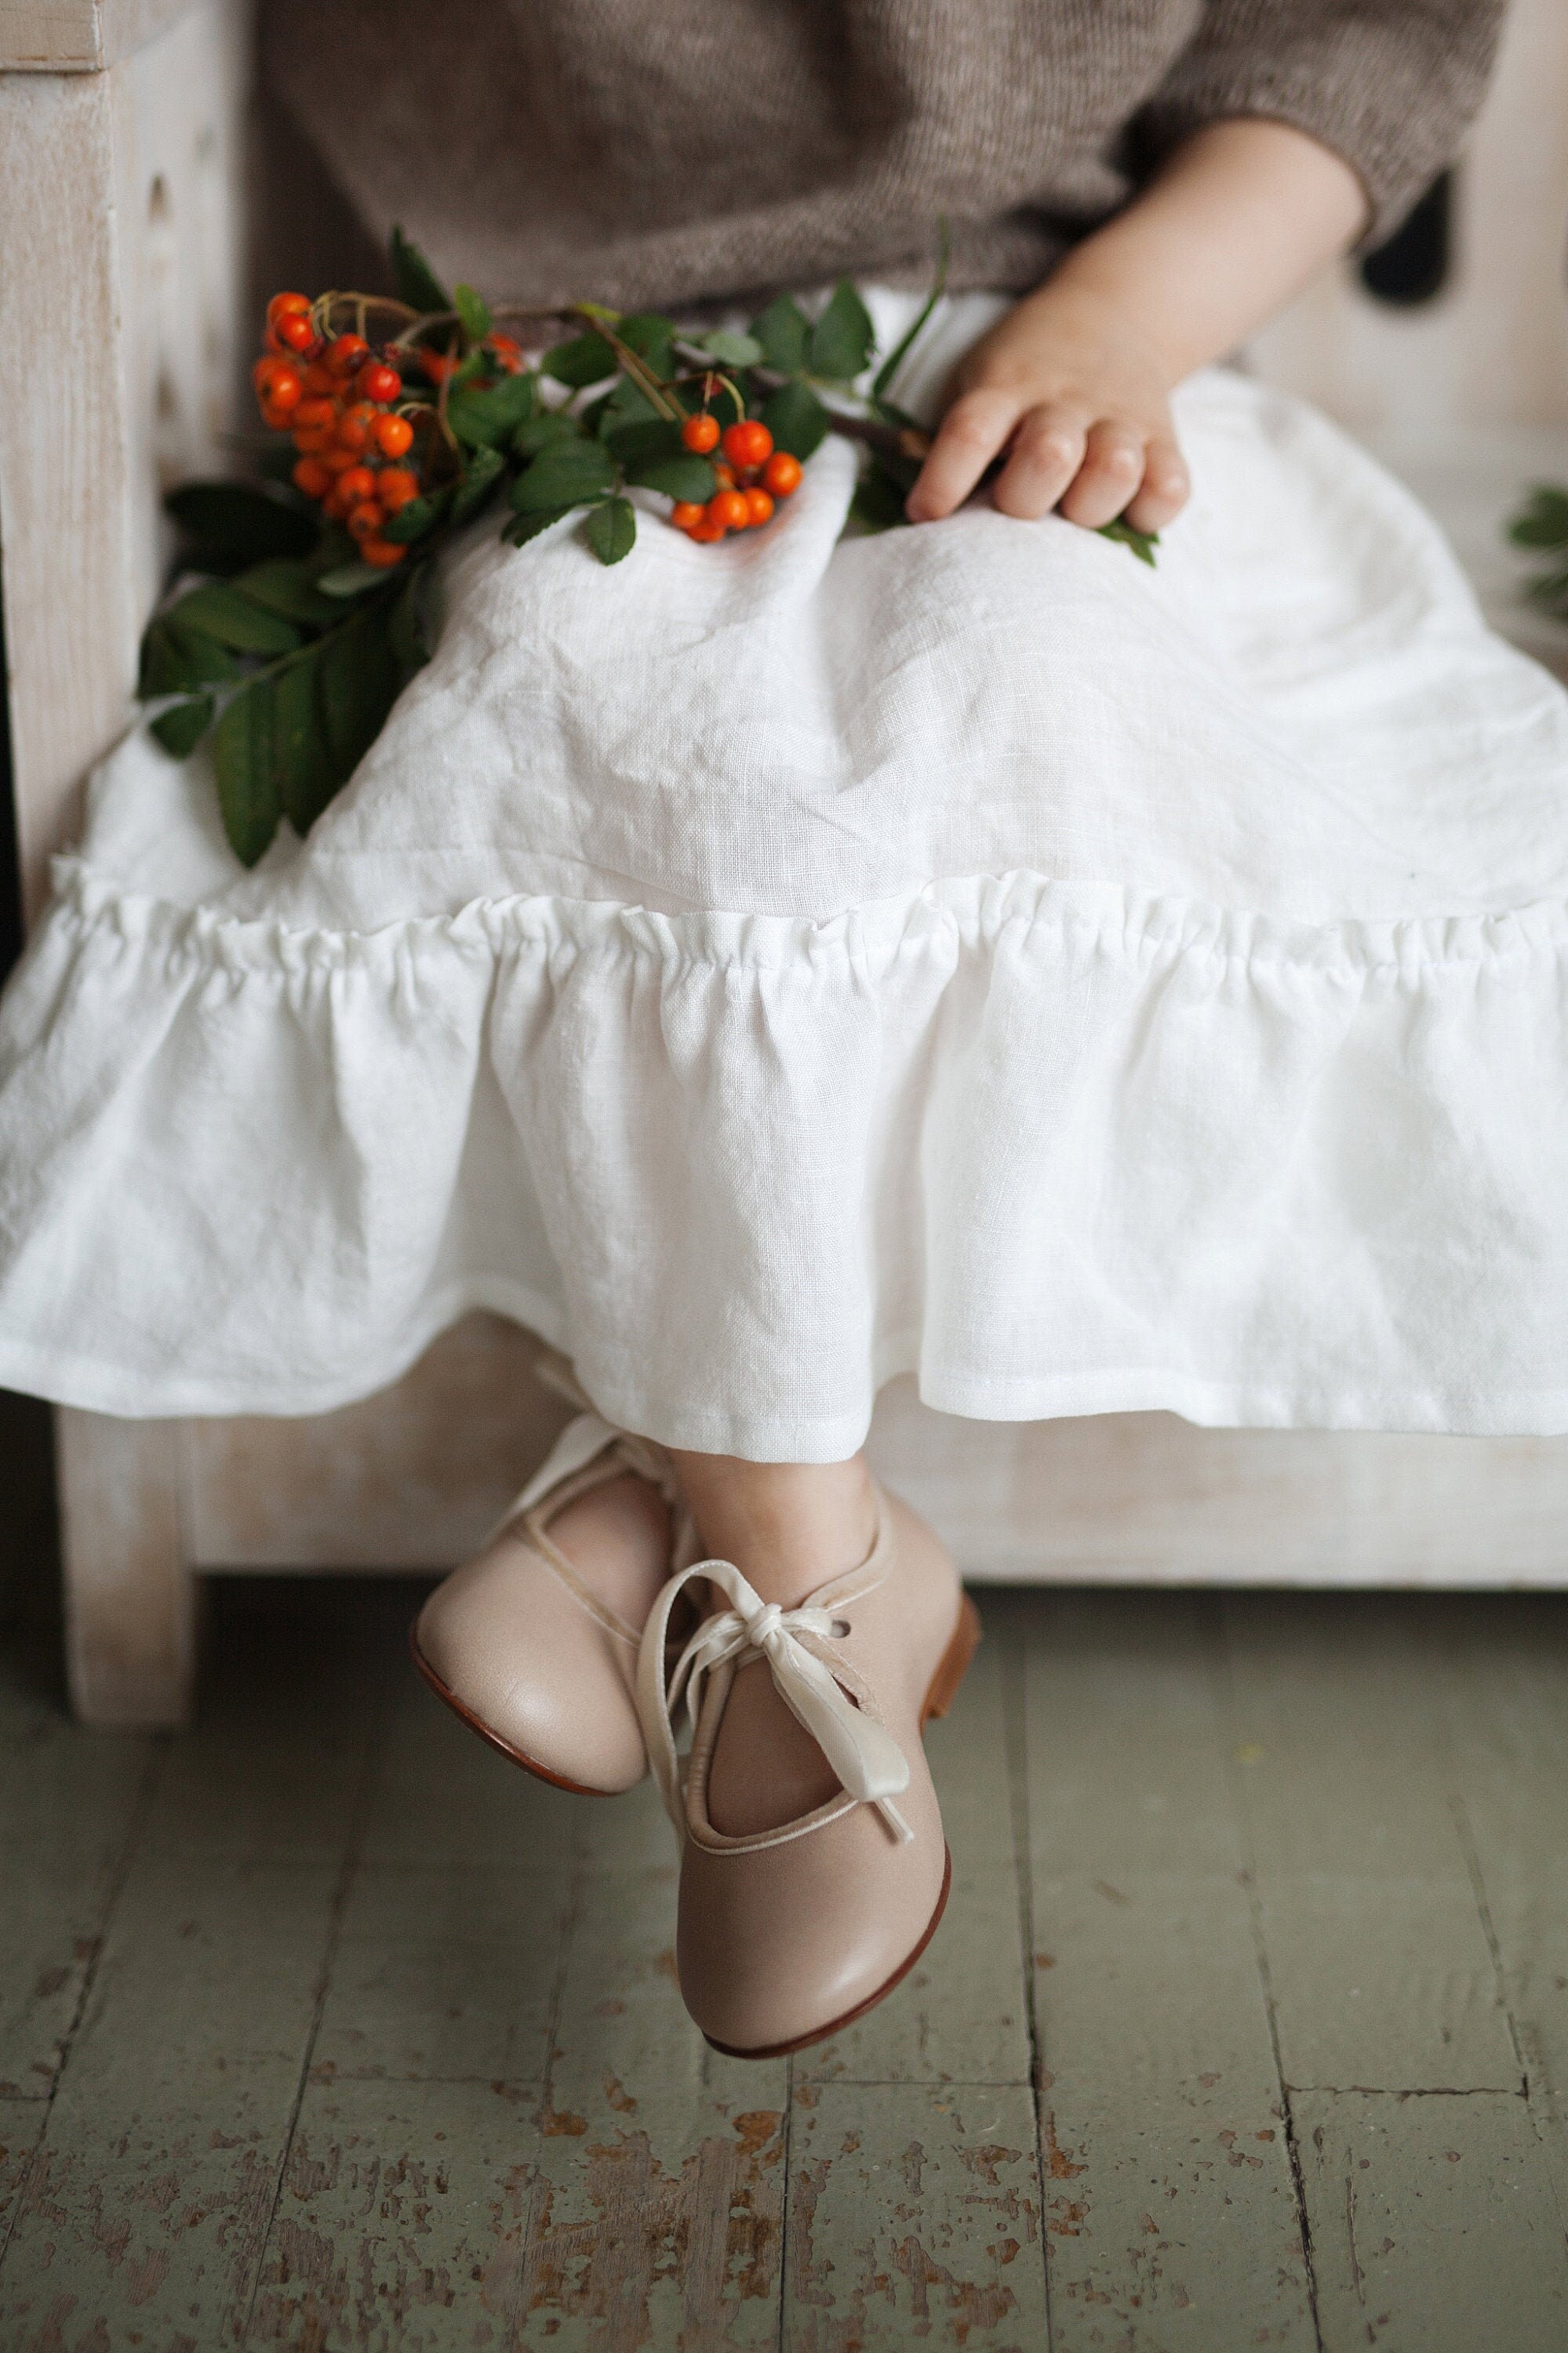 White Ruffle Linen Skirt